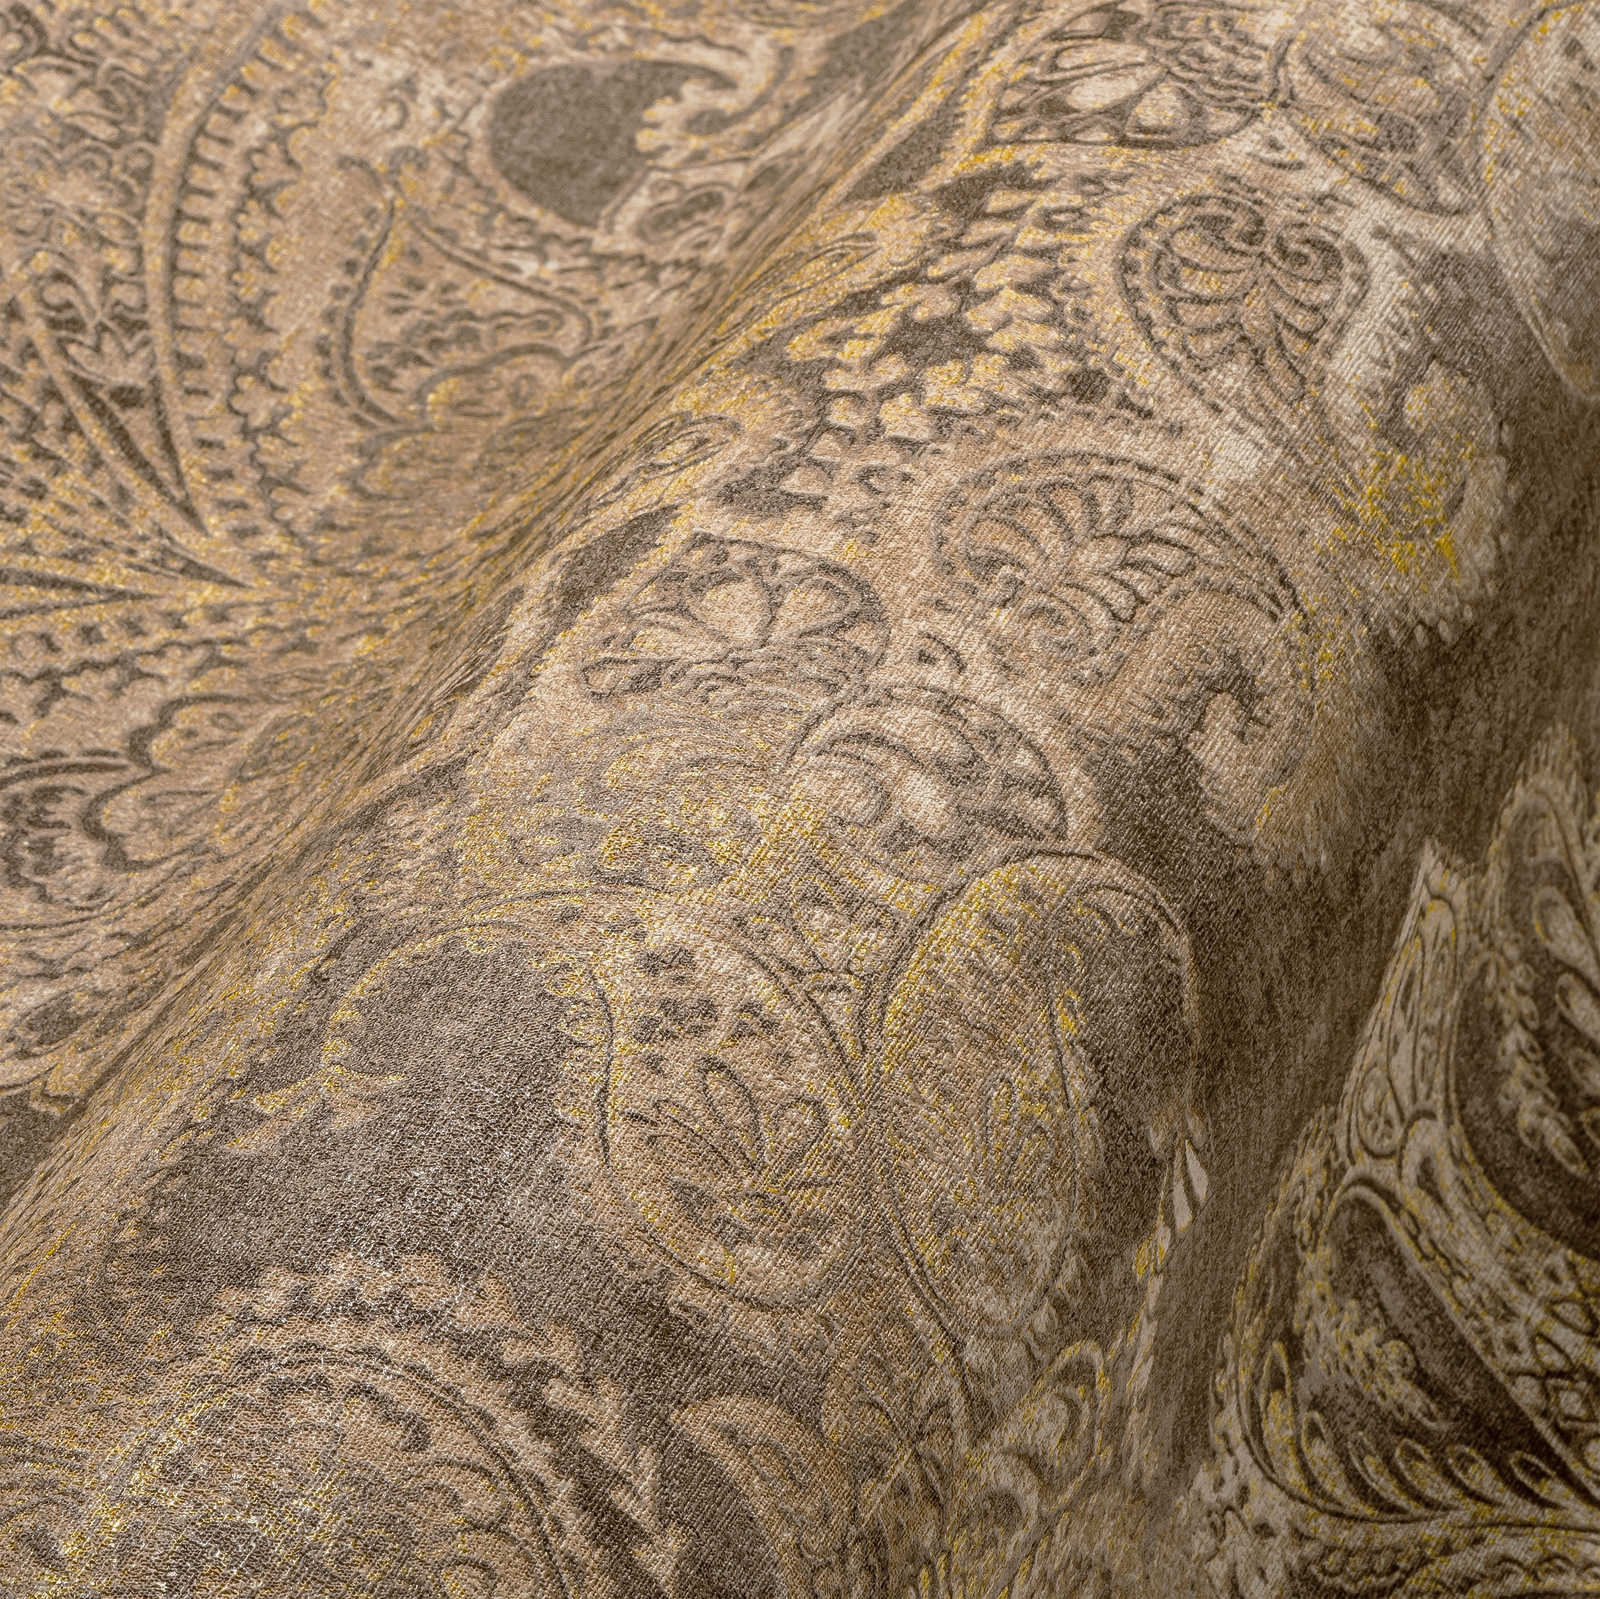             Papier peint baroque avec ornements à grande échelle - marron, beige, jaune
        